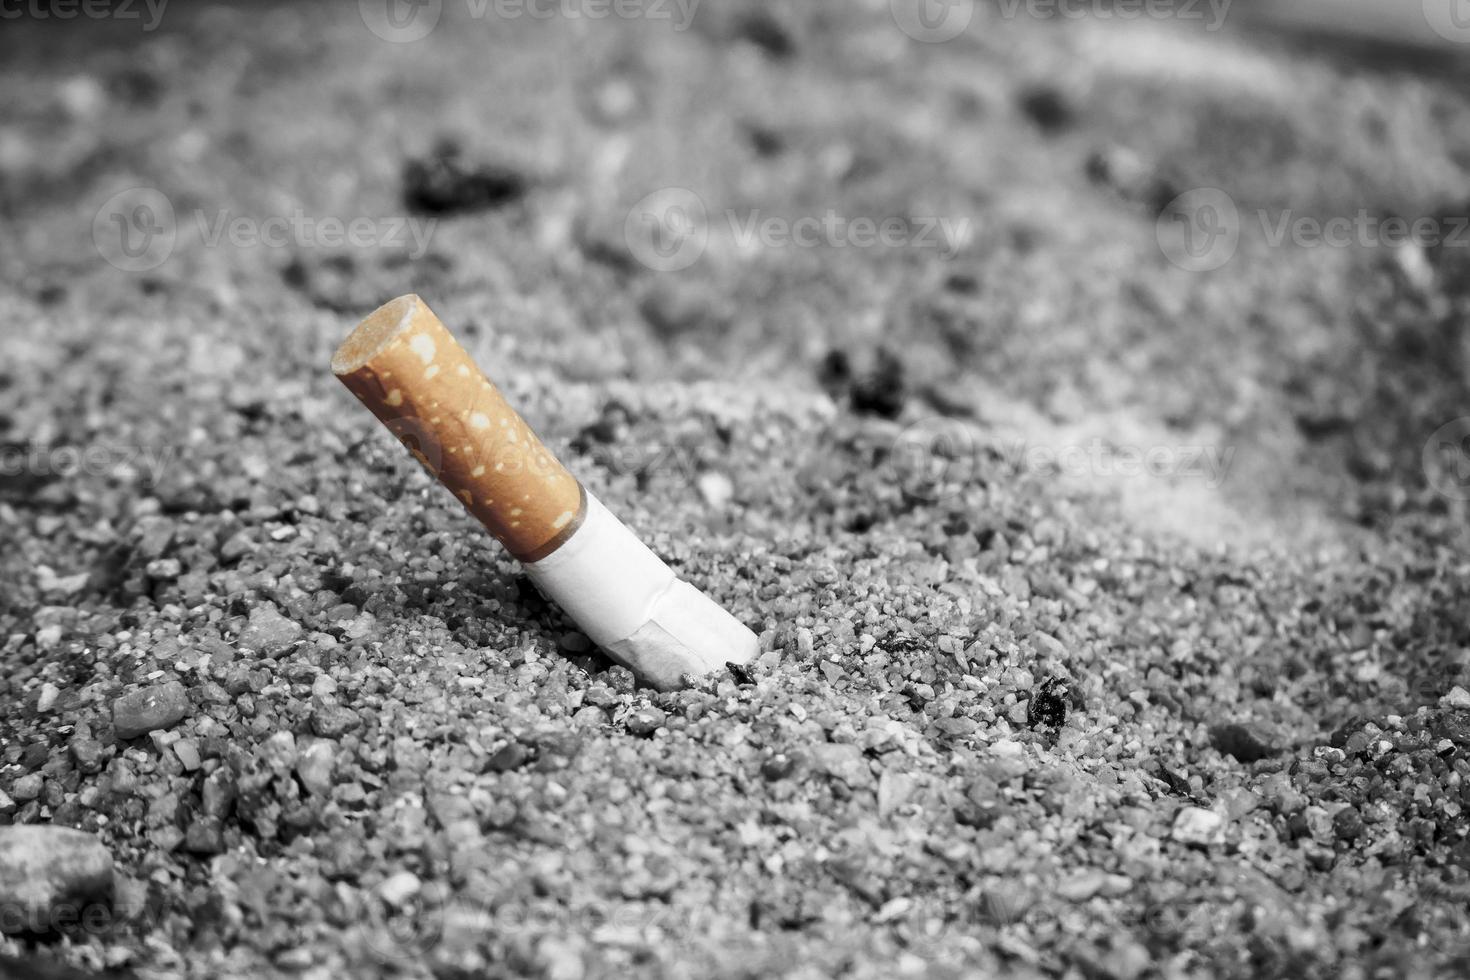 Tobacco Cigarette butt photo